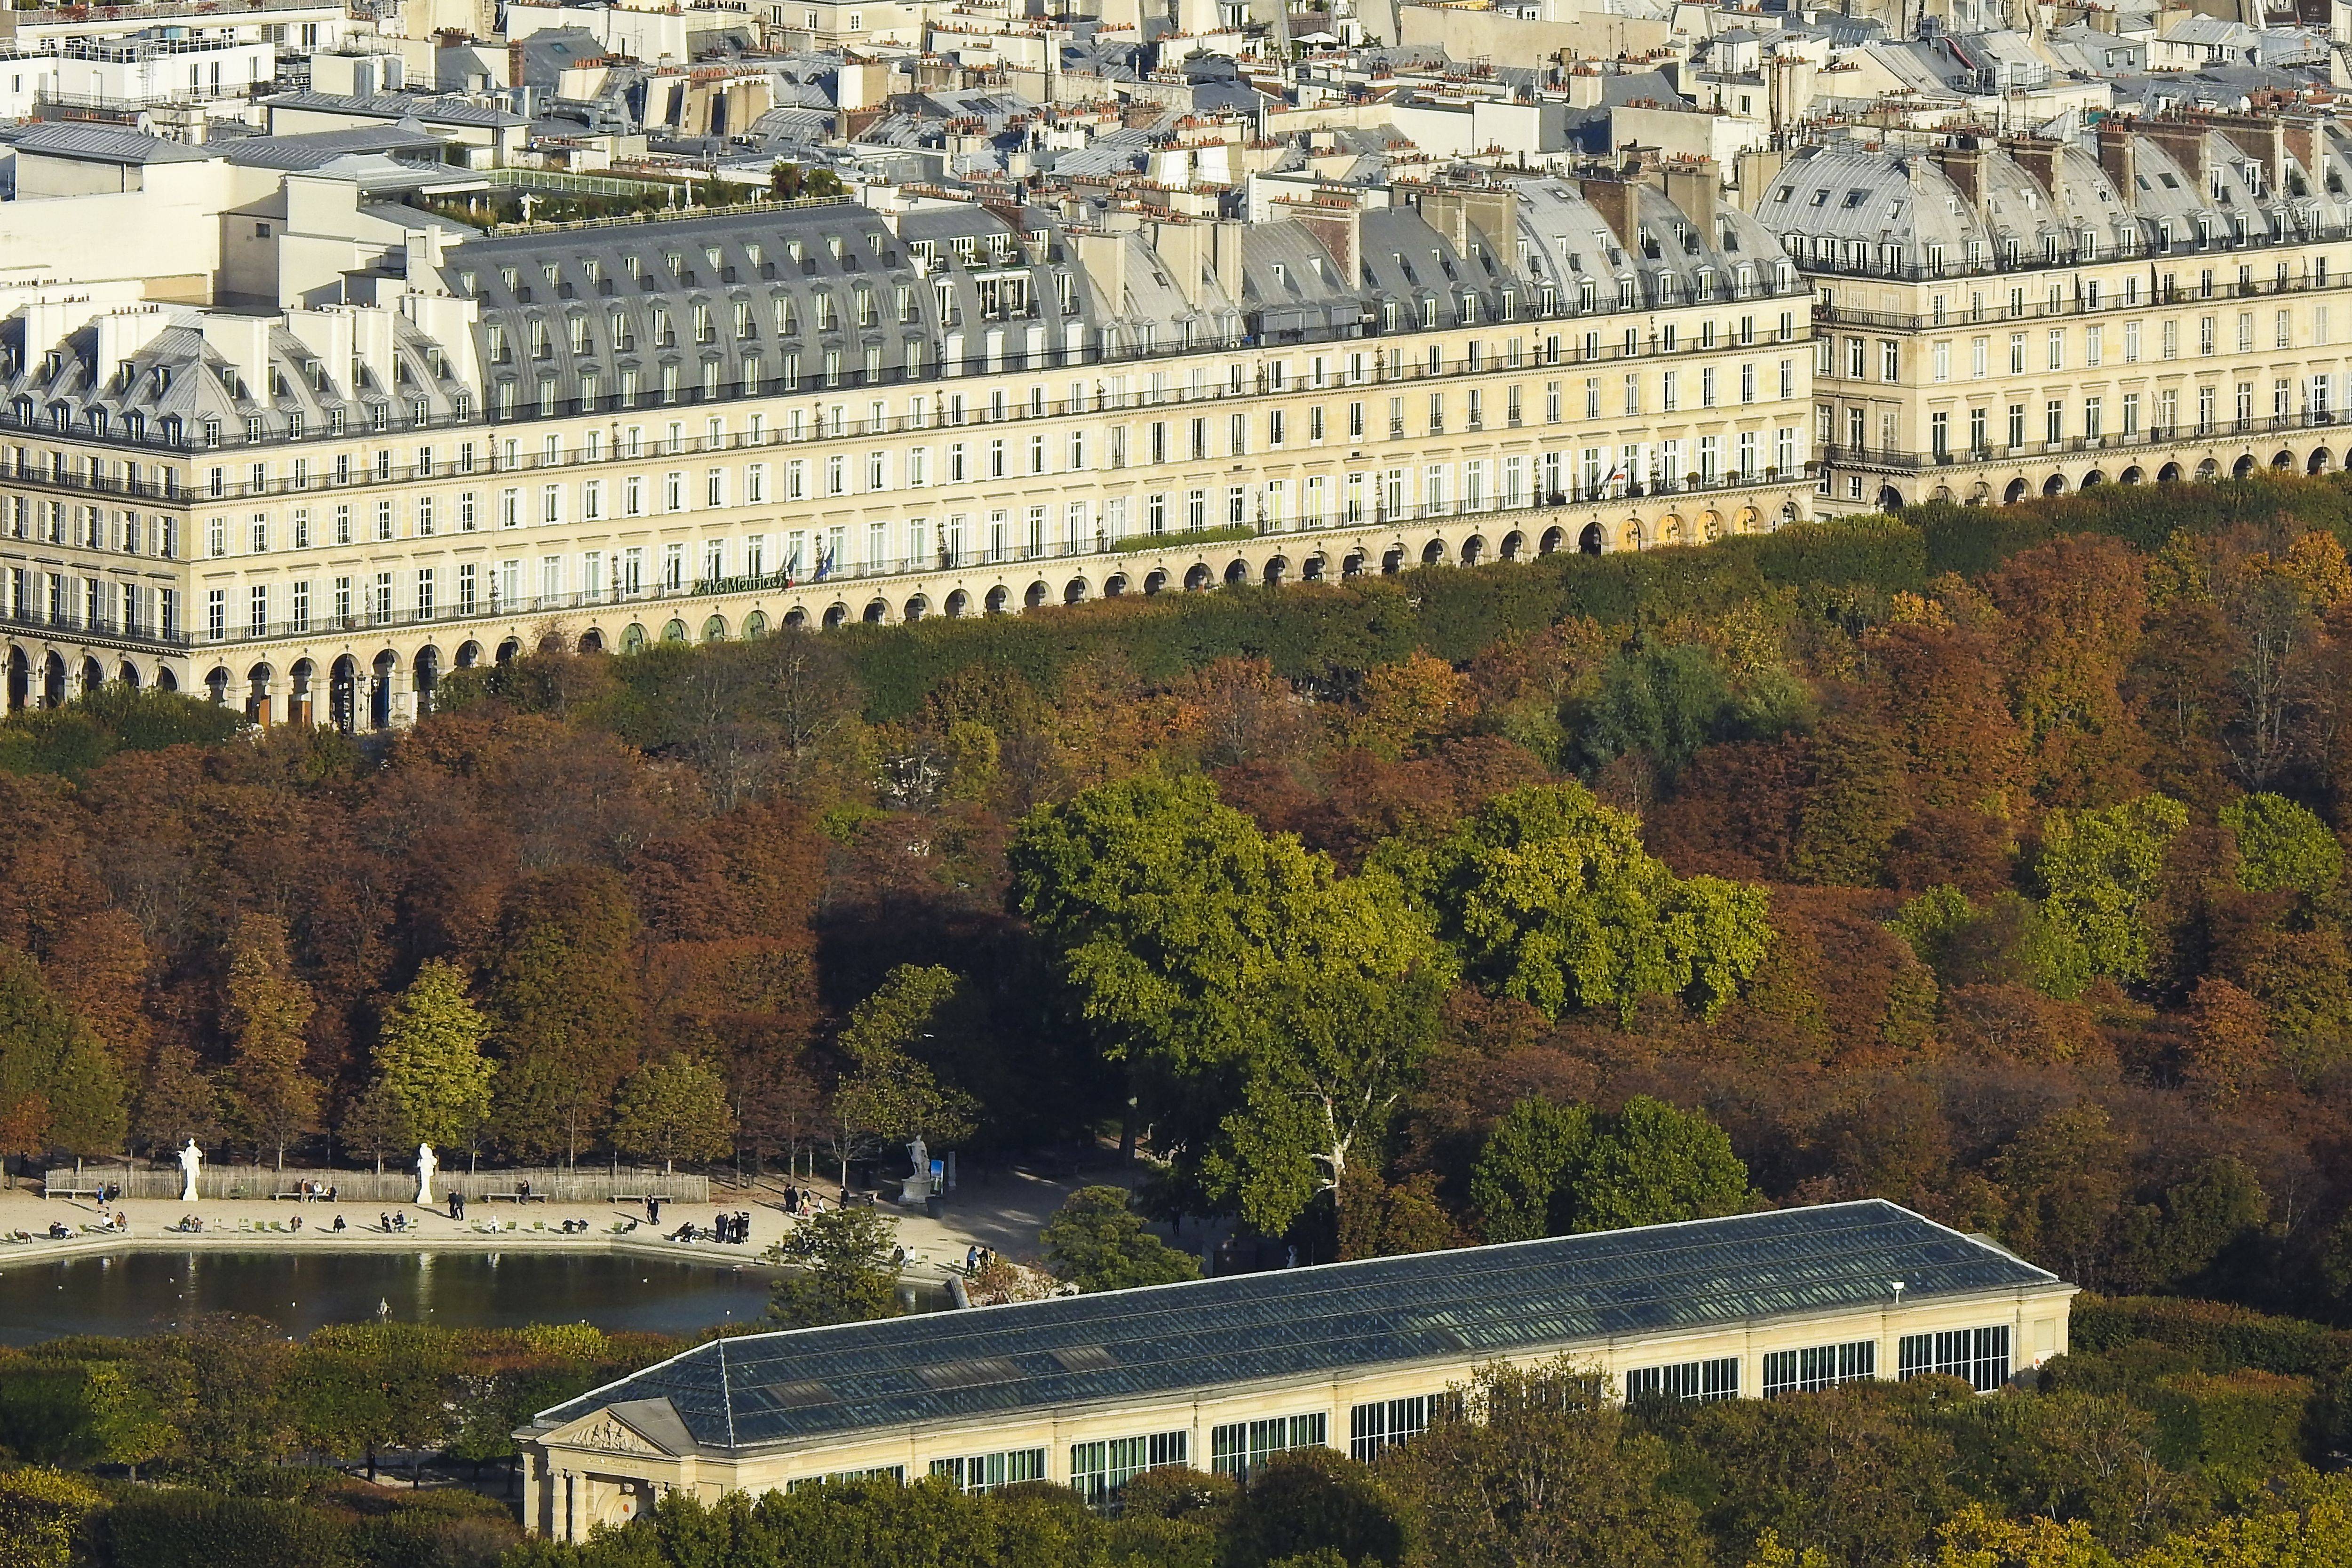 这是10月19日拍摄的法国巴黎杜伊勒里宫.